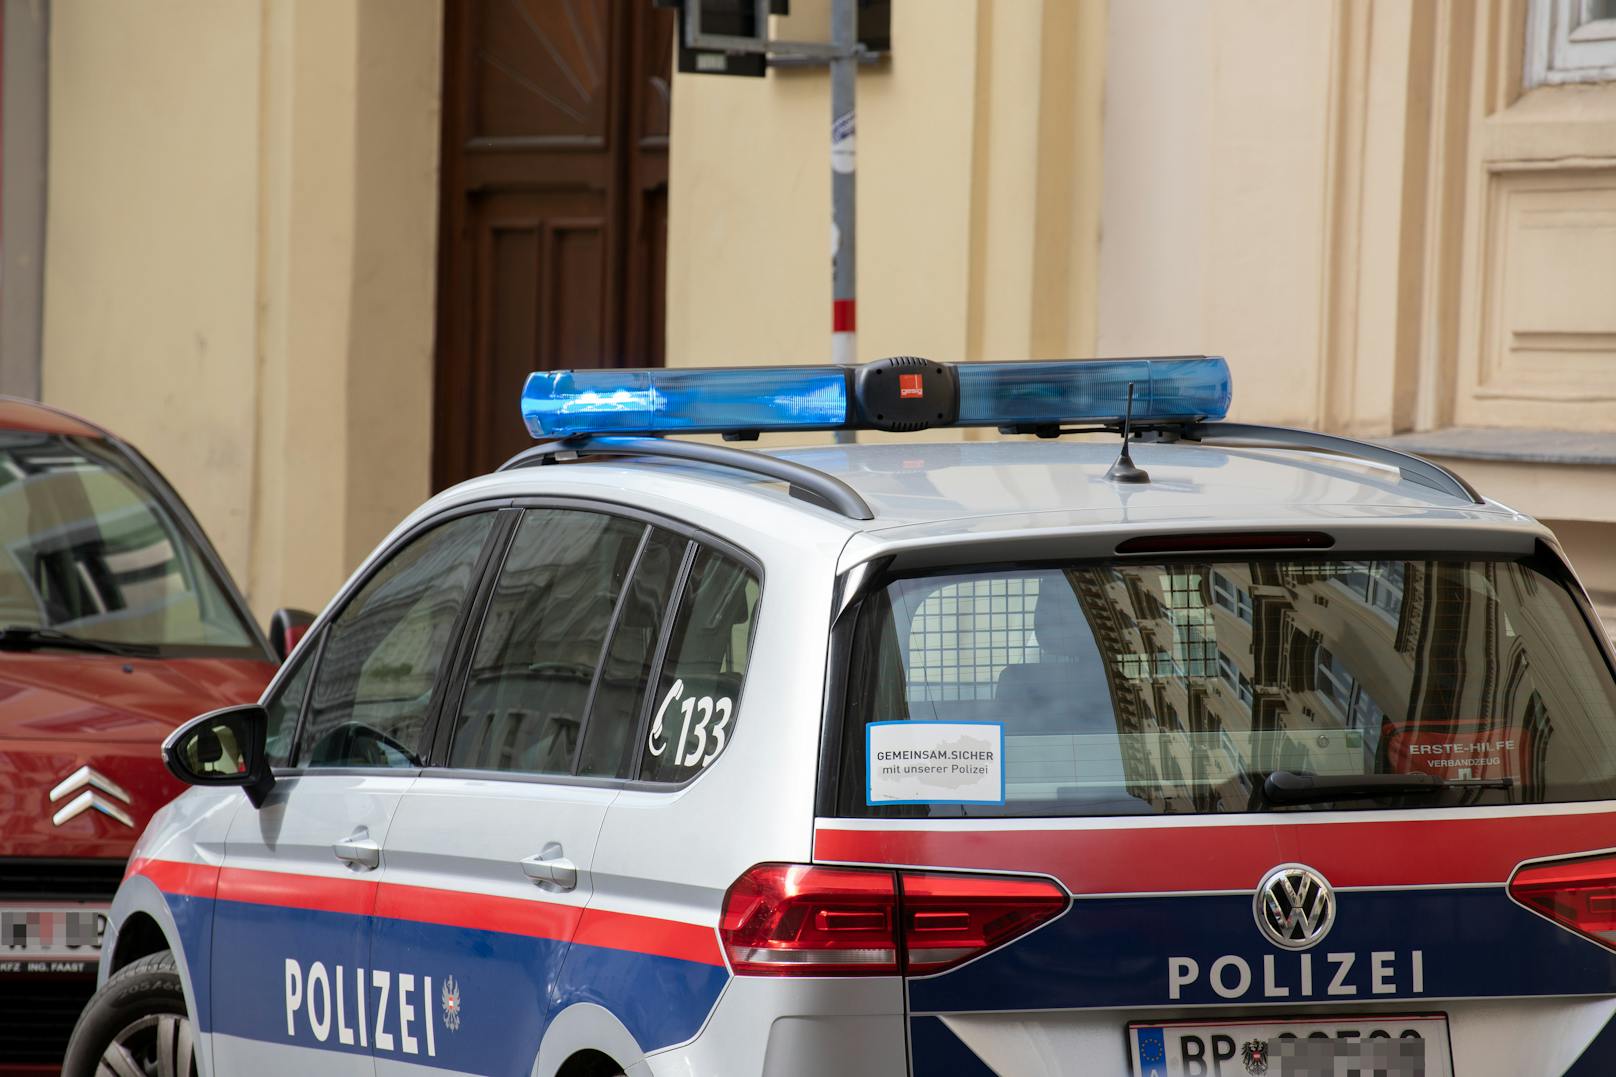 Polizei-Auto in Wien: Am Samstag kam es zu einem blutigen Messerangriff in Floridsdorf.